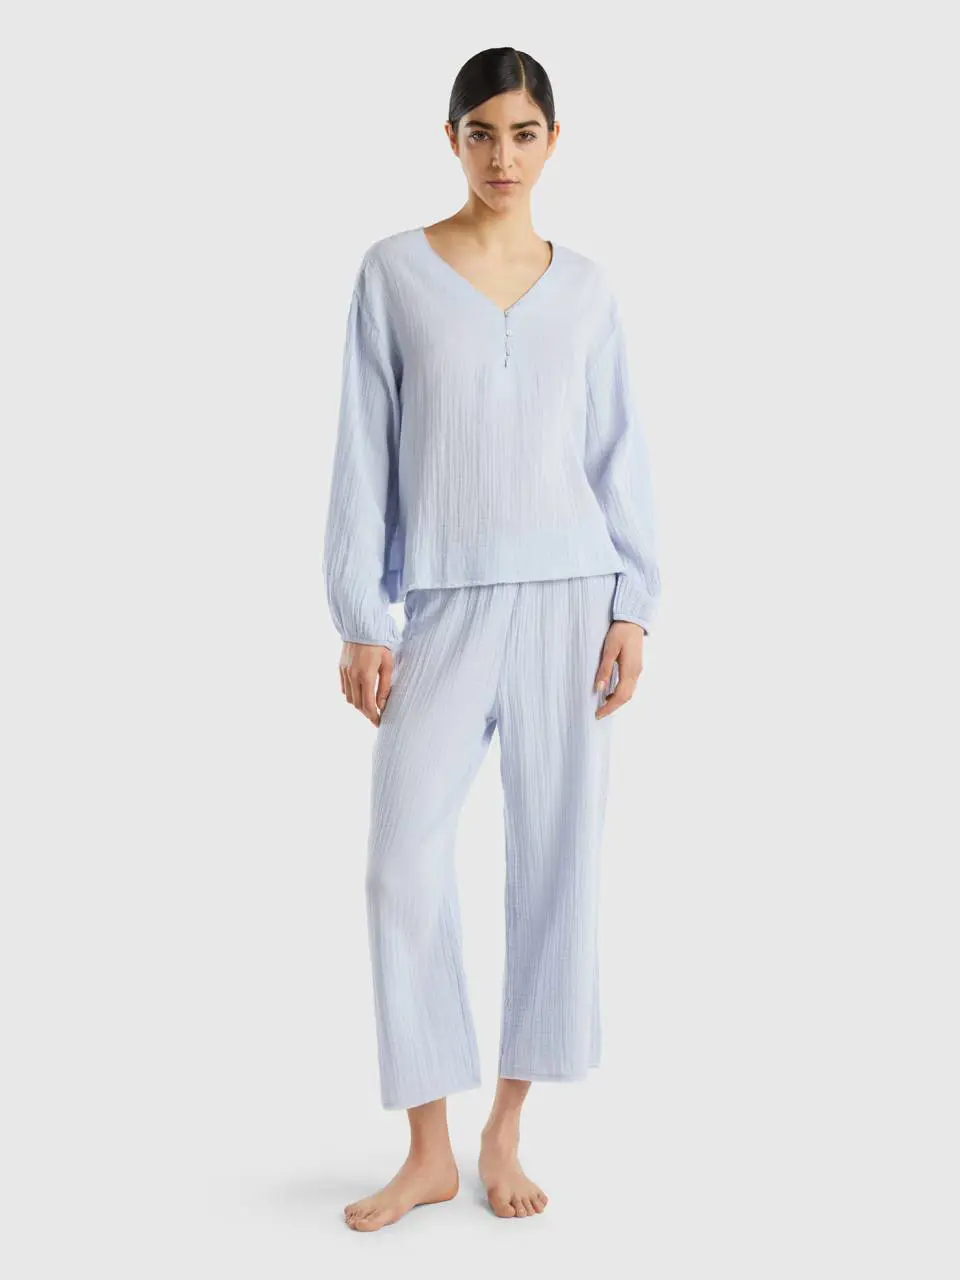 Benetton pyjamas in warm cotton. 1